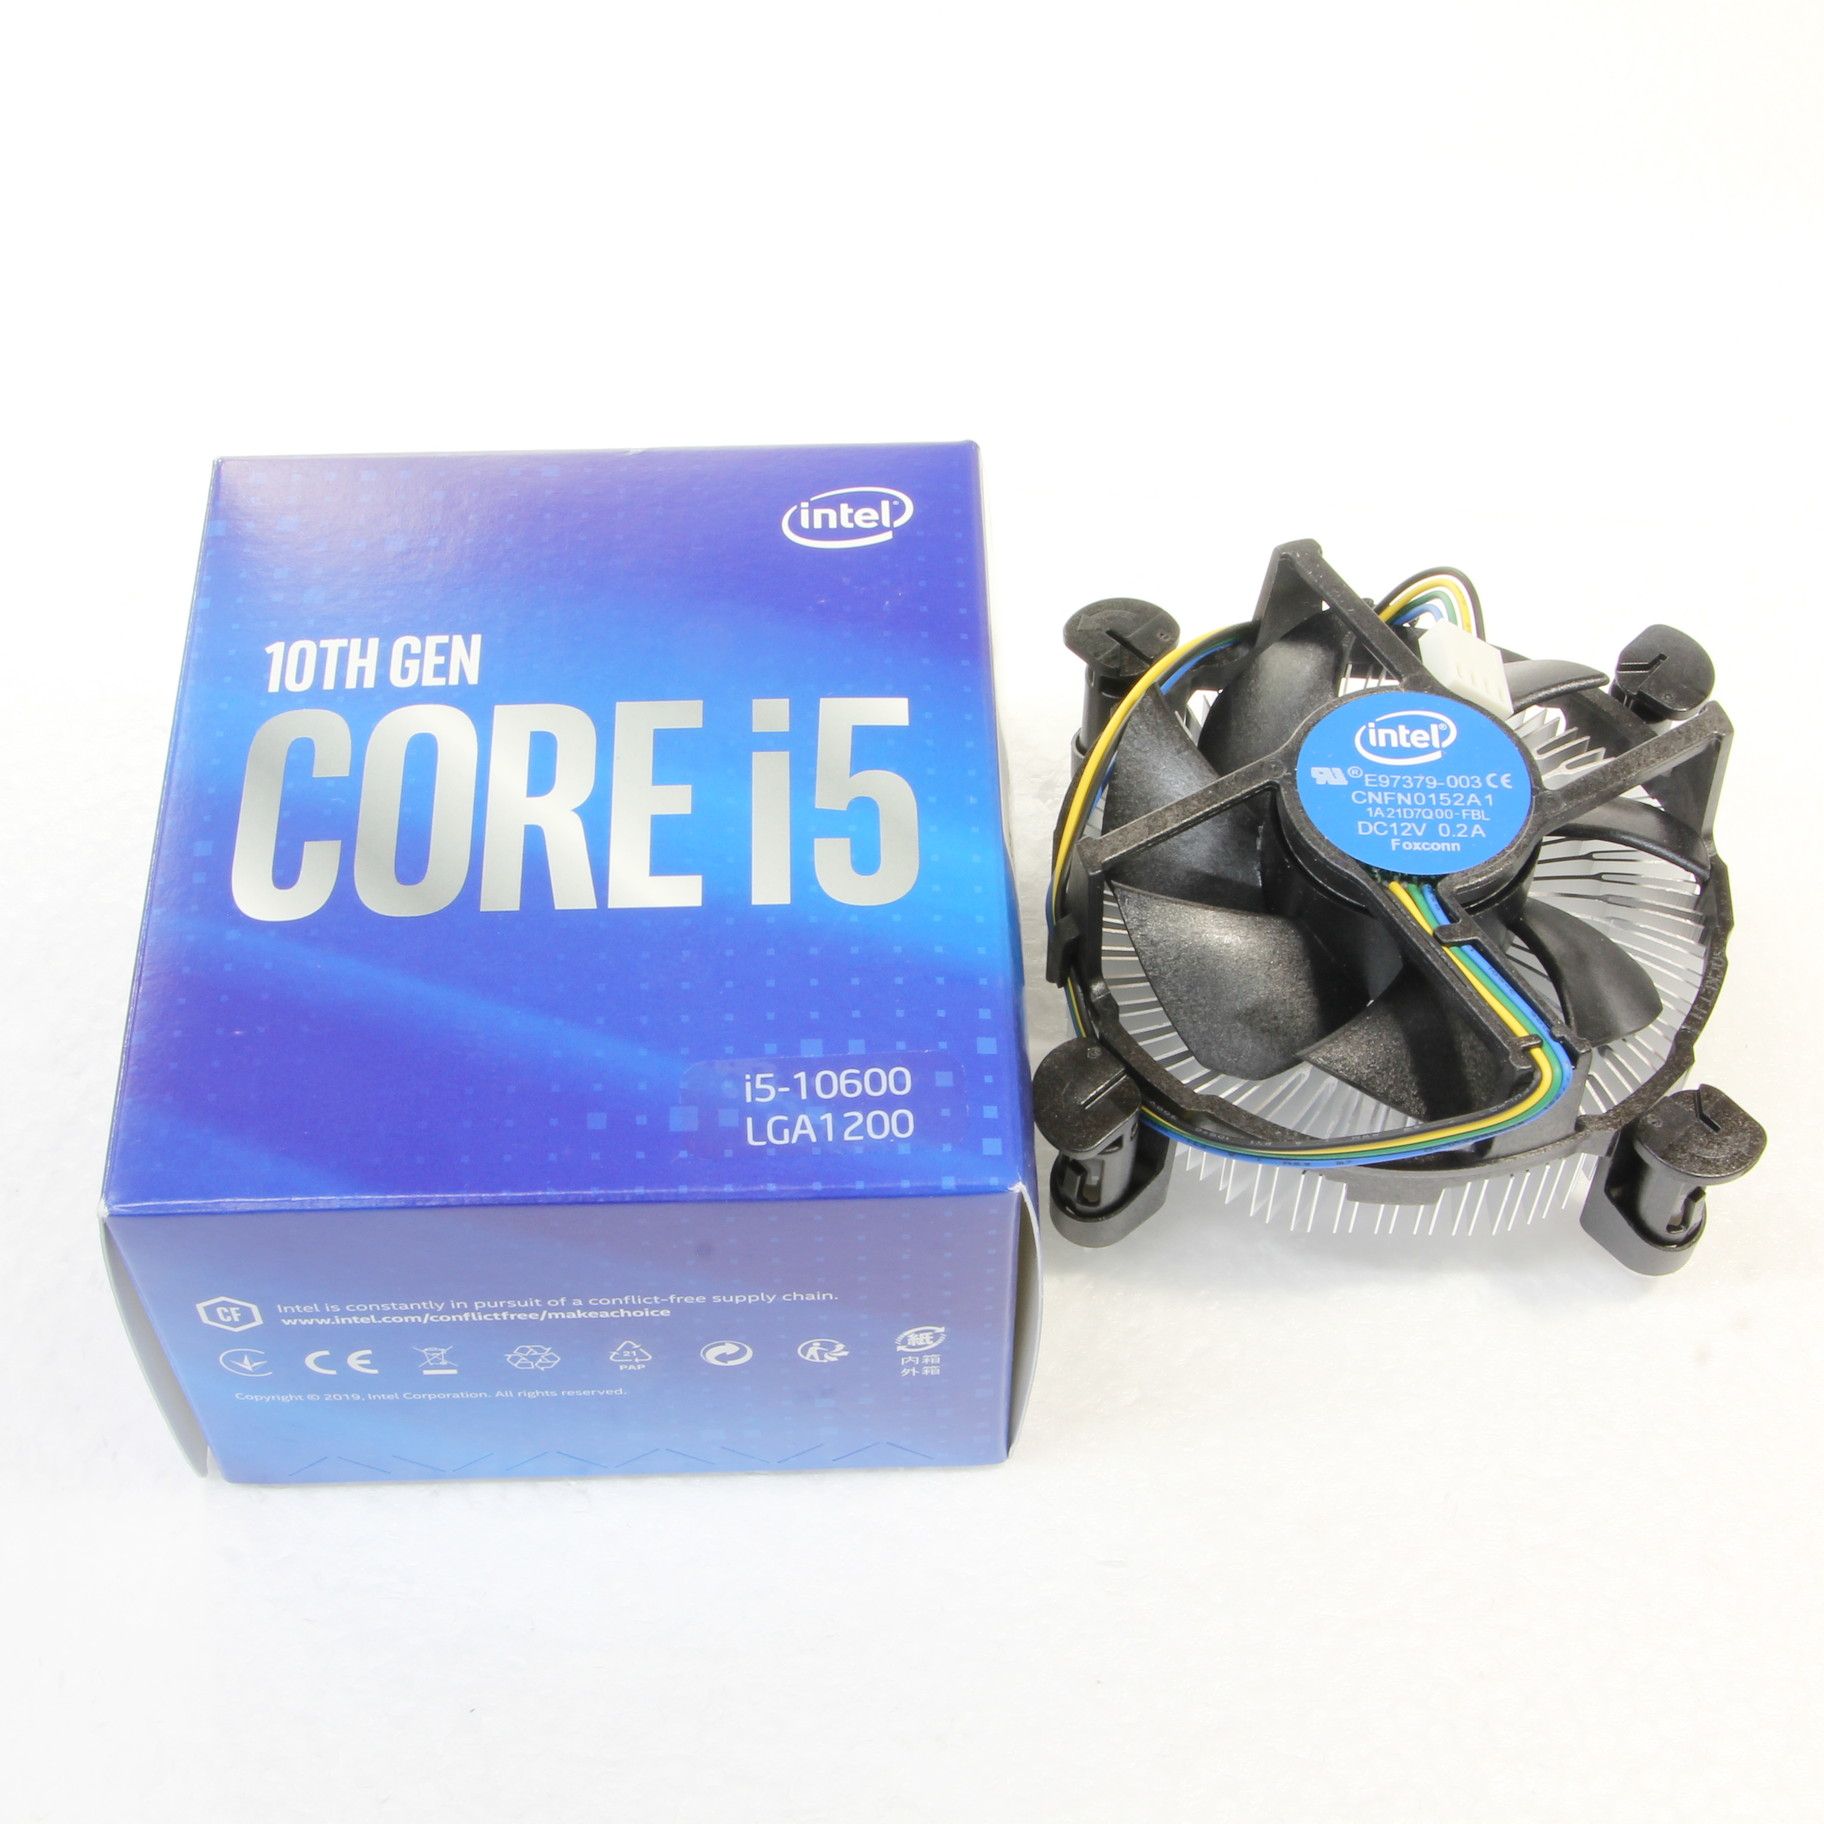 Core i5 10600 〔3.3GHz／LGA 1200〕